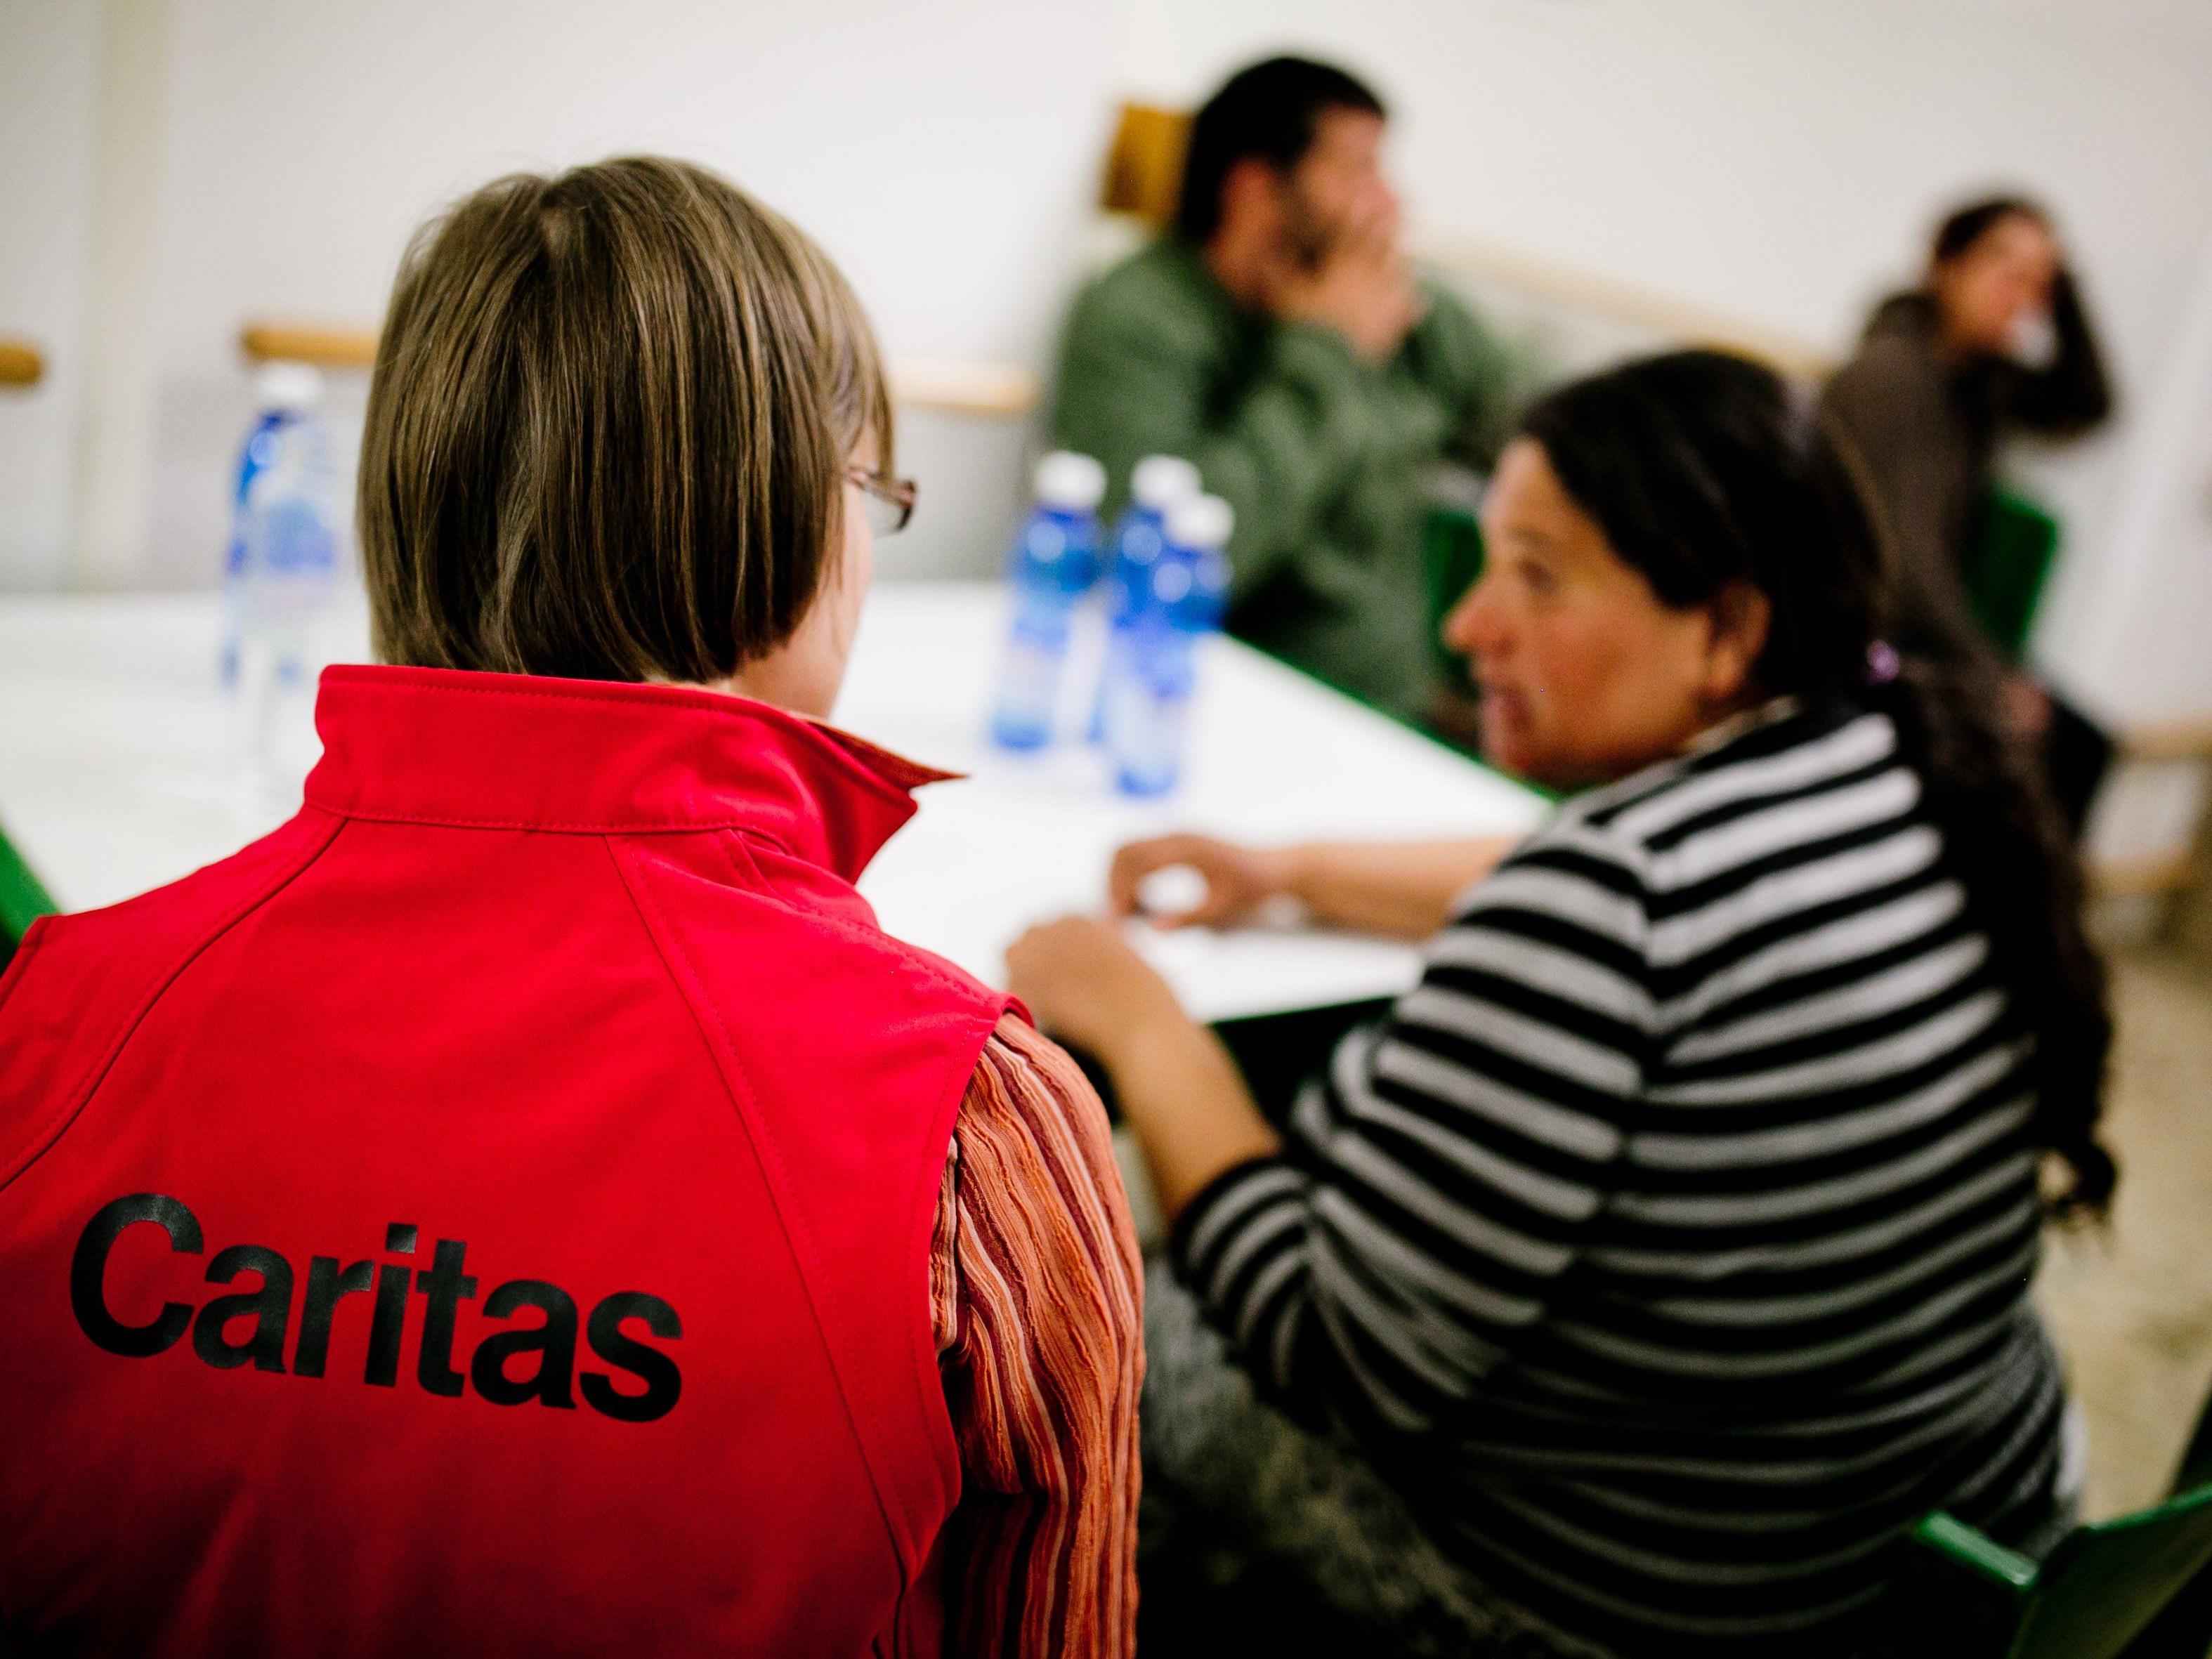 Die Caritas Salzburg bittet um Geld- und Sachspenden für Flüchtlinge im Bundesland, die dann, nach eingehender Prüfung des Bedarfs, an die verschieden Betreuungseinrichtungen verteilt werden.